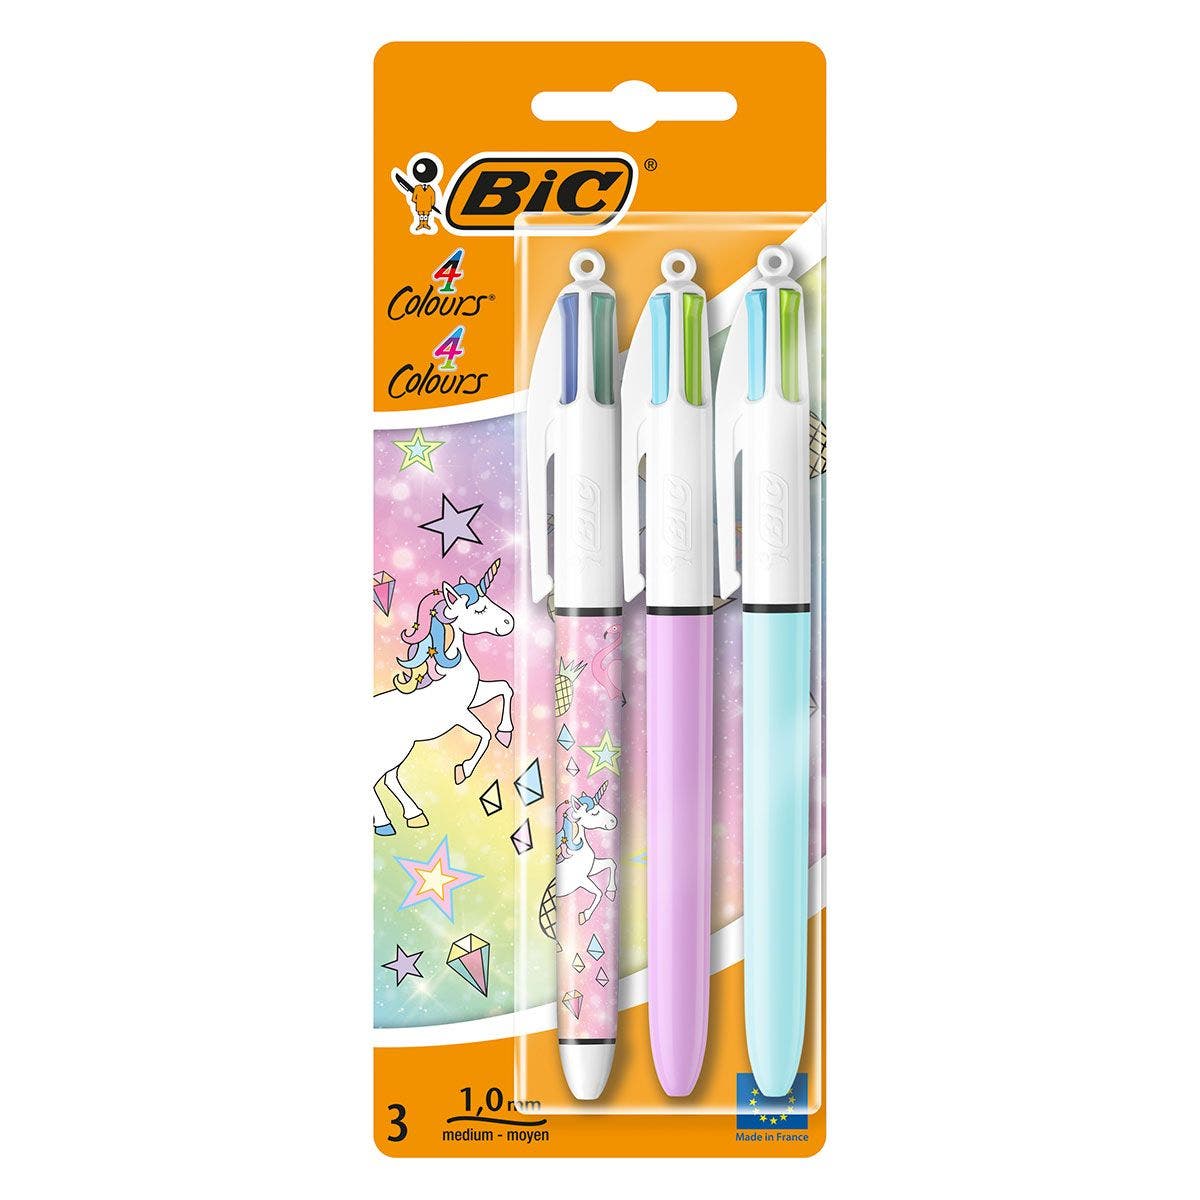 Le stylo 4-couleurs de Bic, nouvelle folie des cours de récré